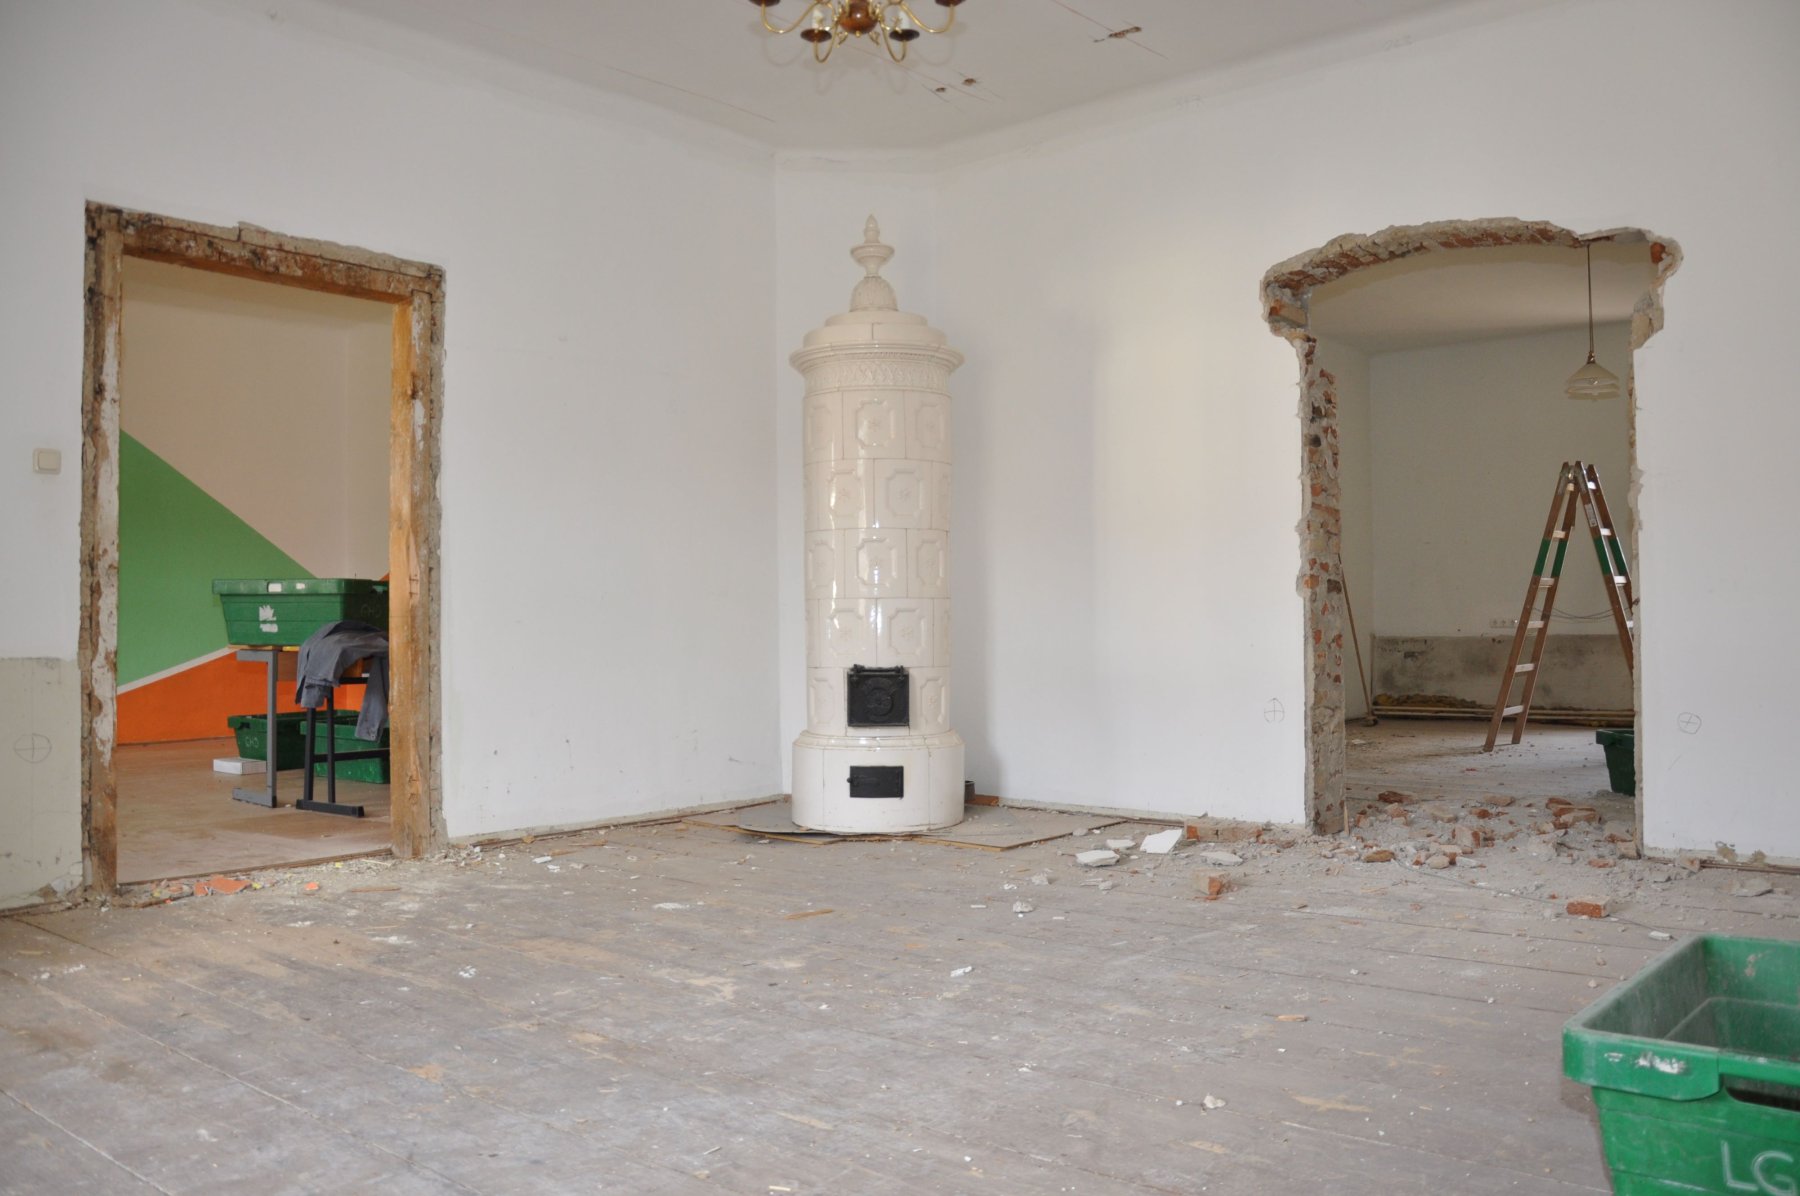 Umbauarbeiten in einem Raum mit altem, weißen Kamin